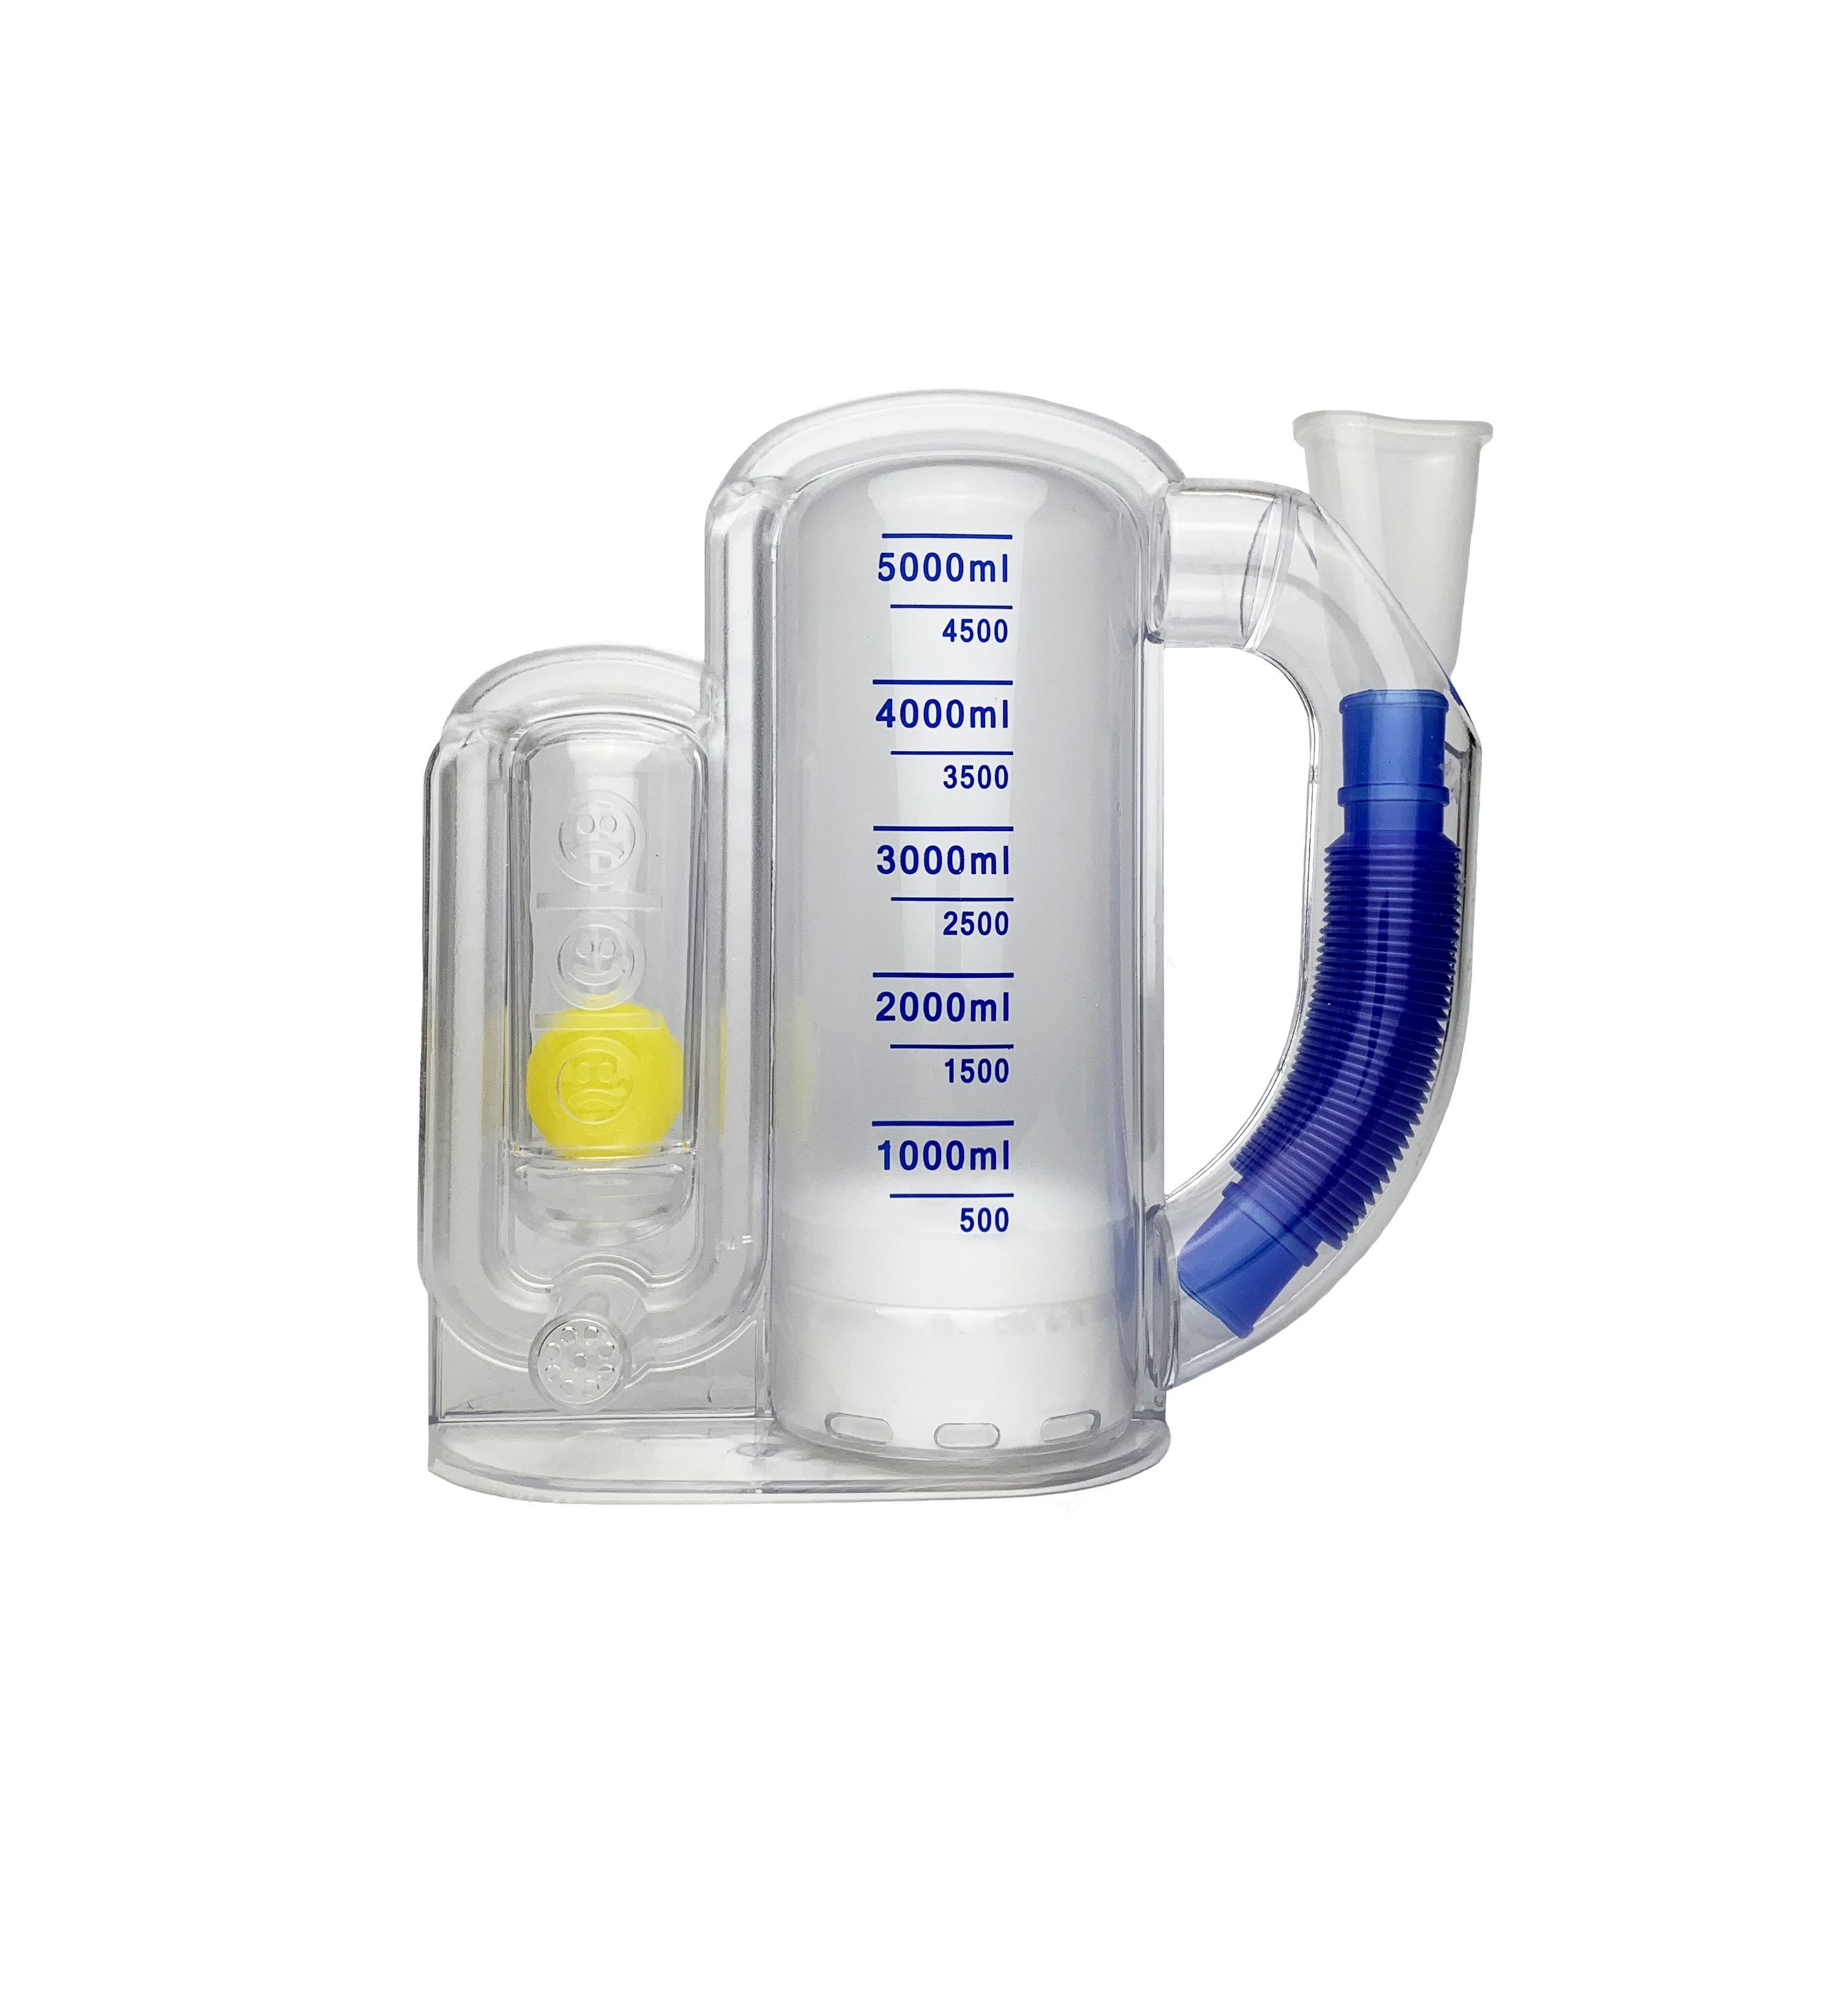 新澳冠呼吸训练器销售_呼吸训练器使用说明相关-成都新澳冠医疗器械公司